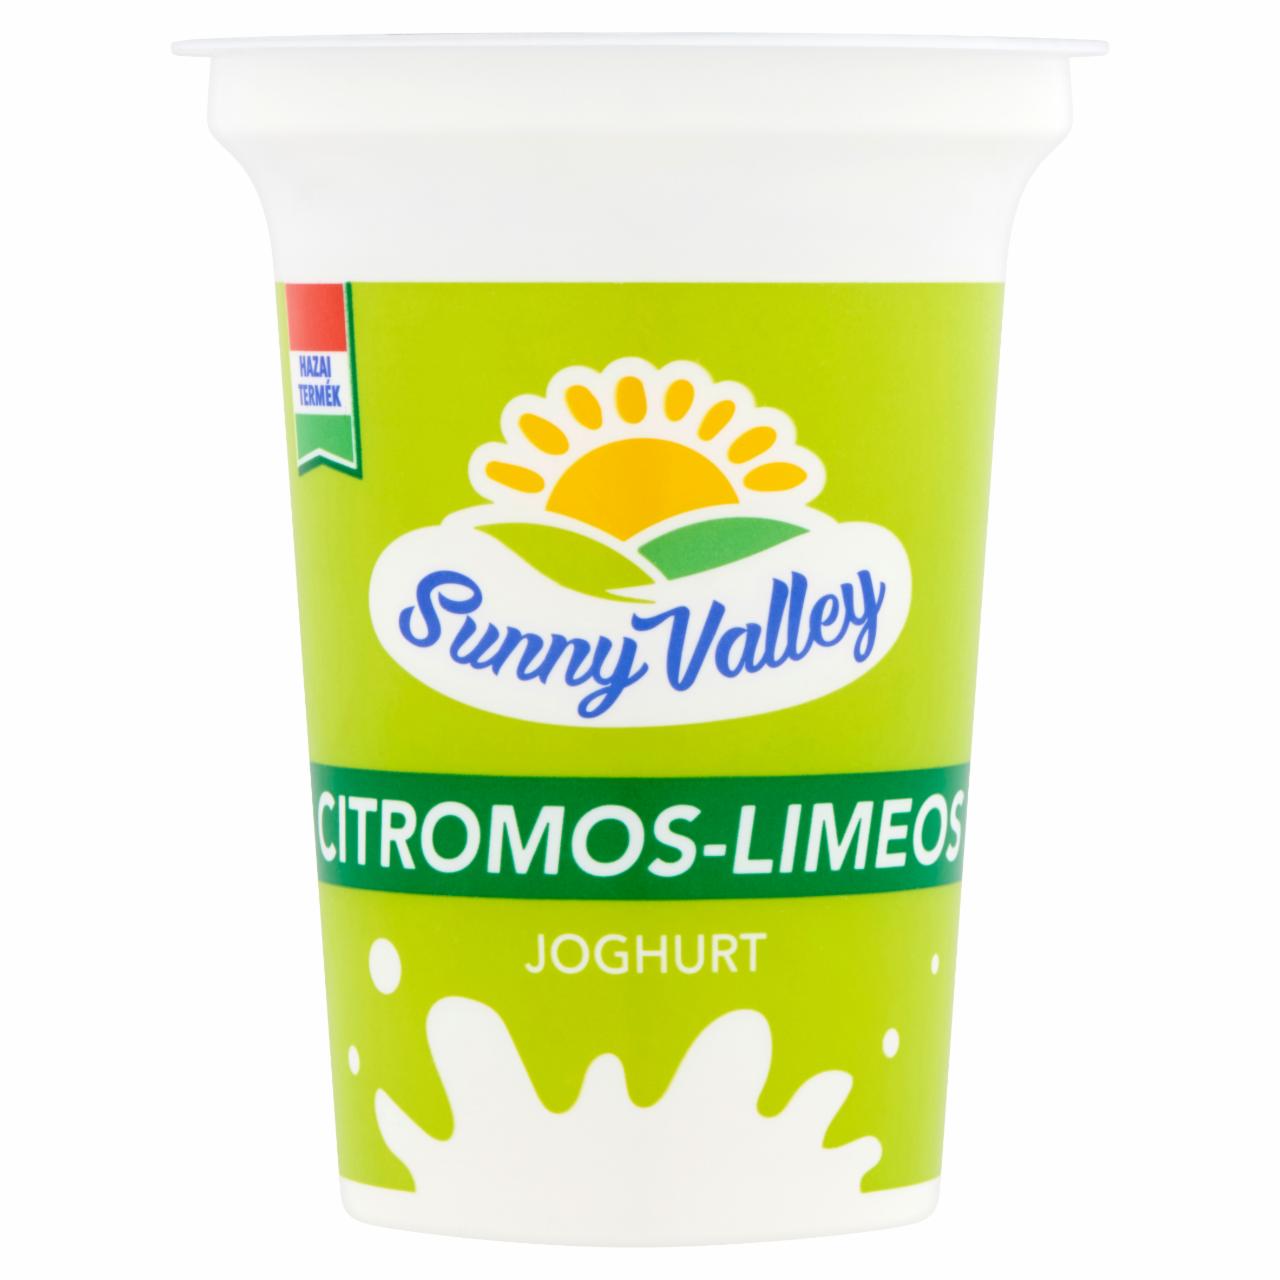 Képek - Sunny Valley élőflórás, zsírszegény citromos-limeos joghurt 375 g